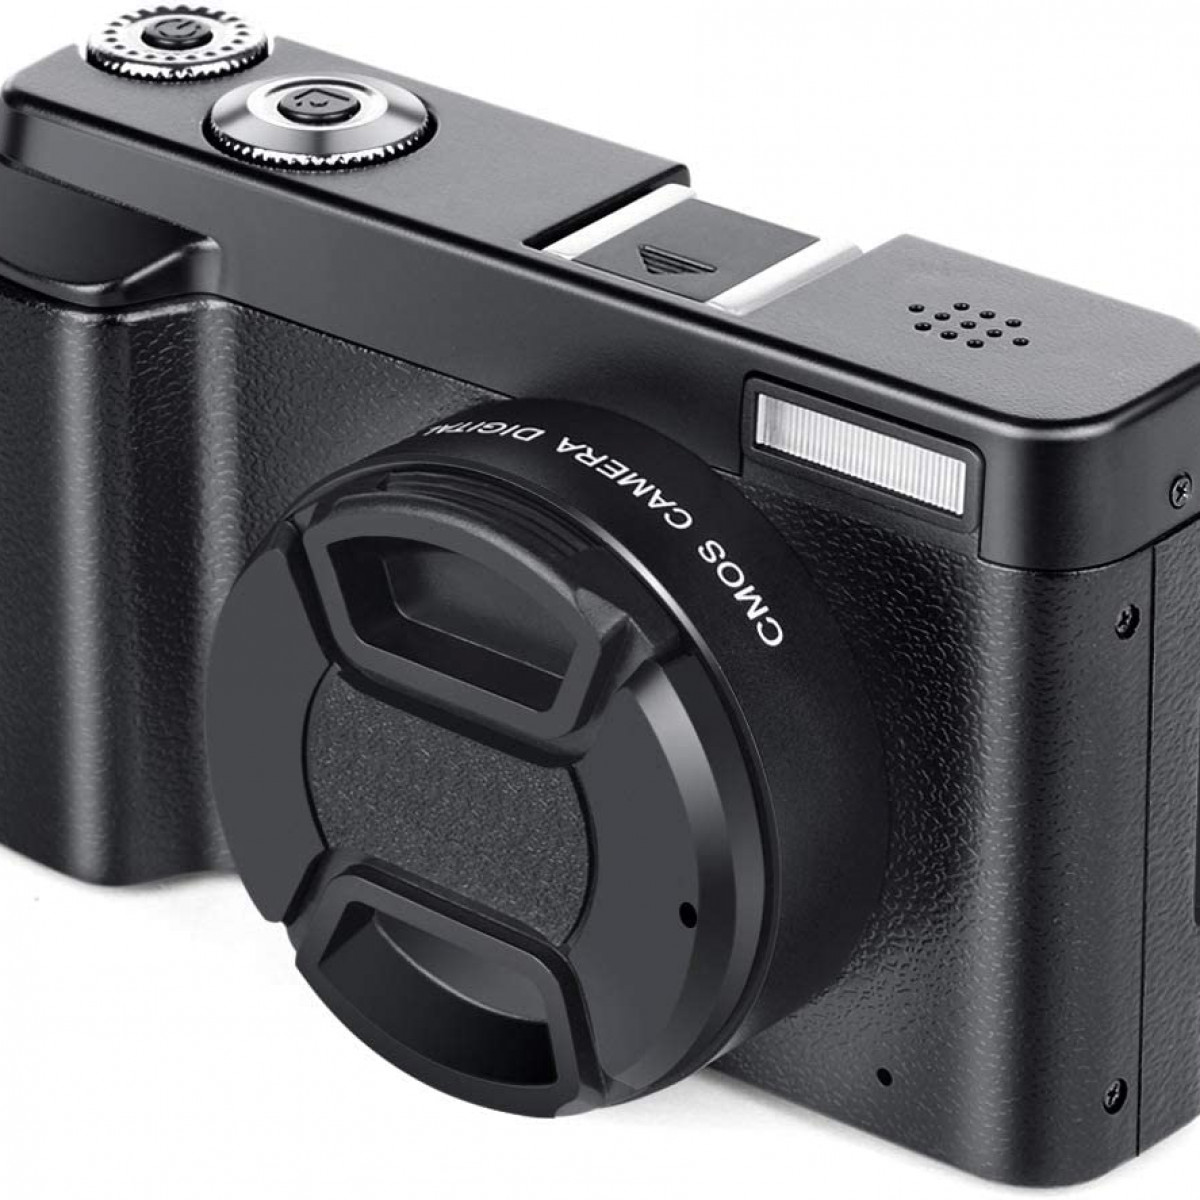 und 24 Zoom MP, HD INF 16x Digitalkamera schwarz mit Digitalkamera 1080p